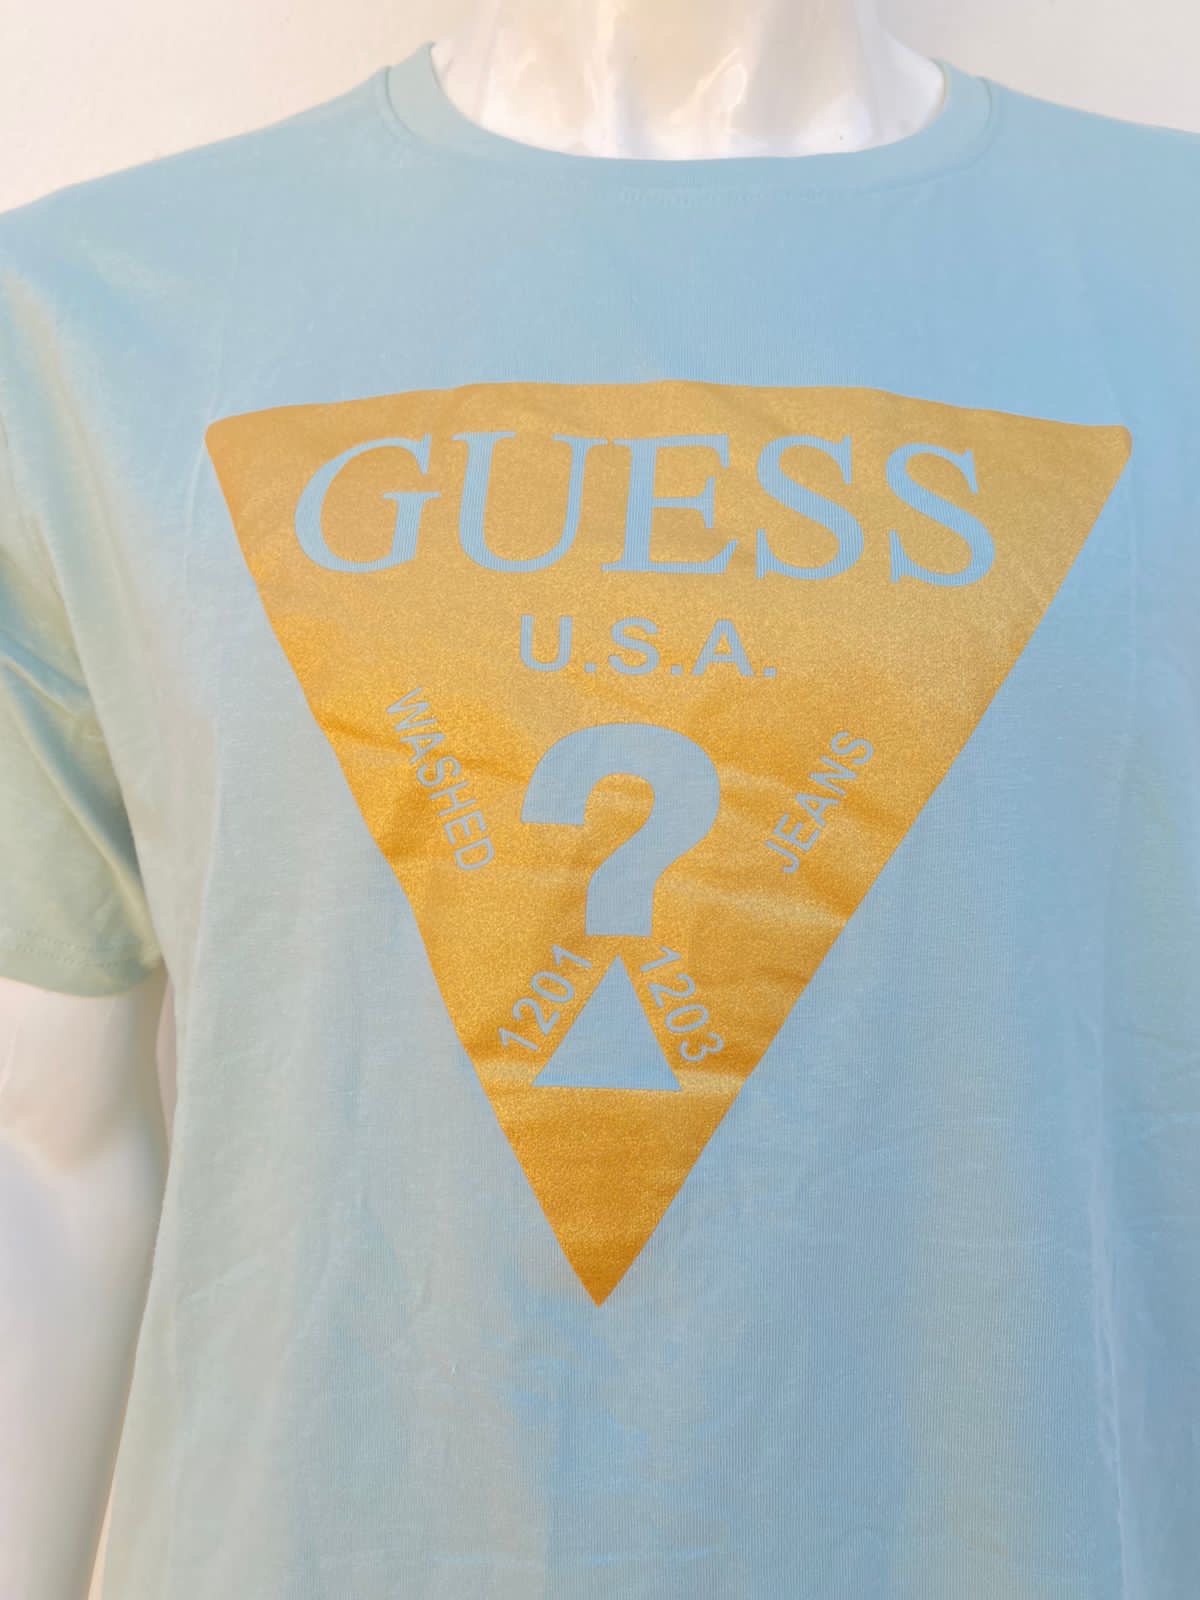 T-shirt Guess Original verde opaco con logotipo Guess en dorado/ amarillo.